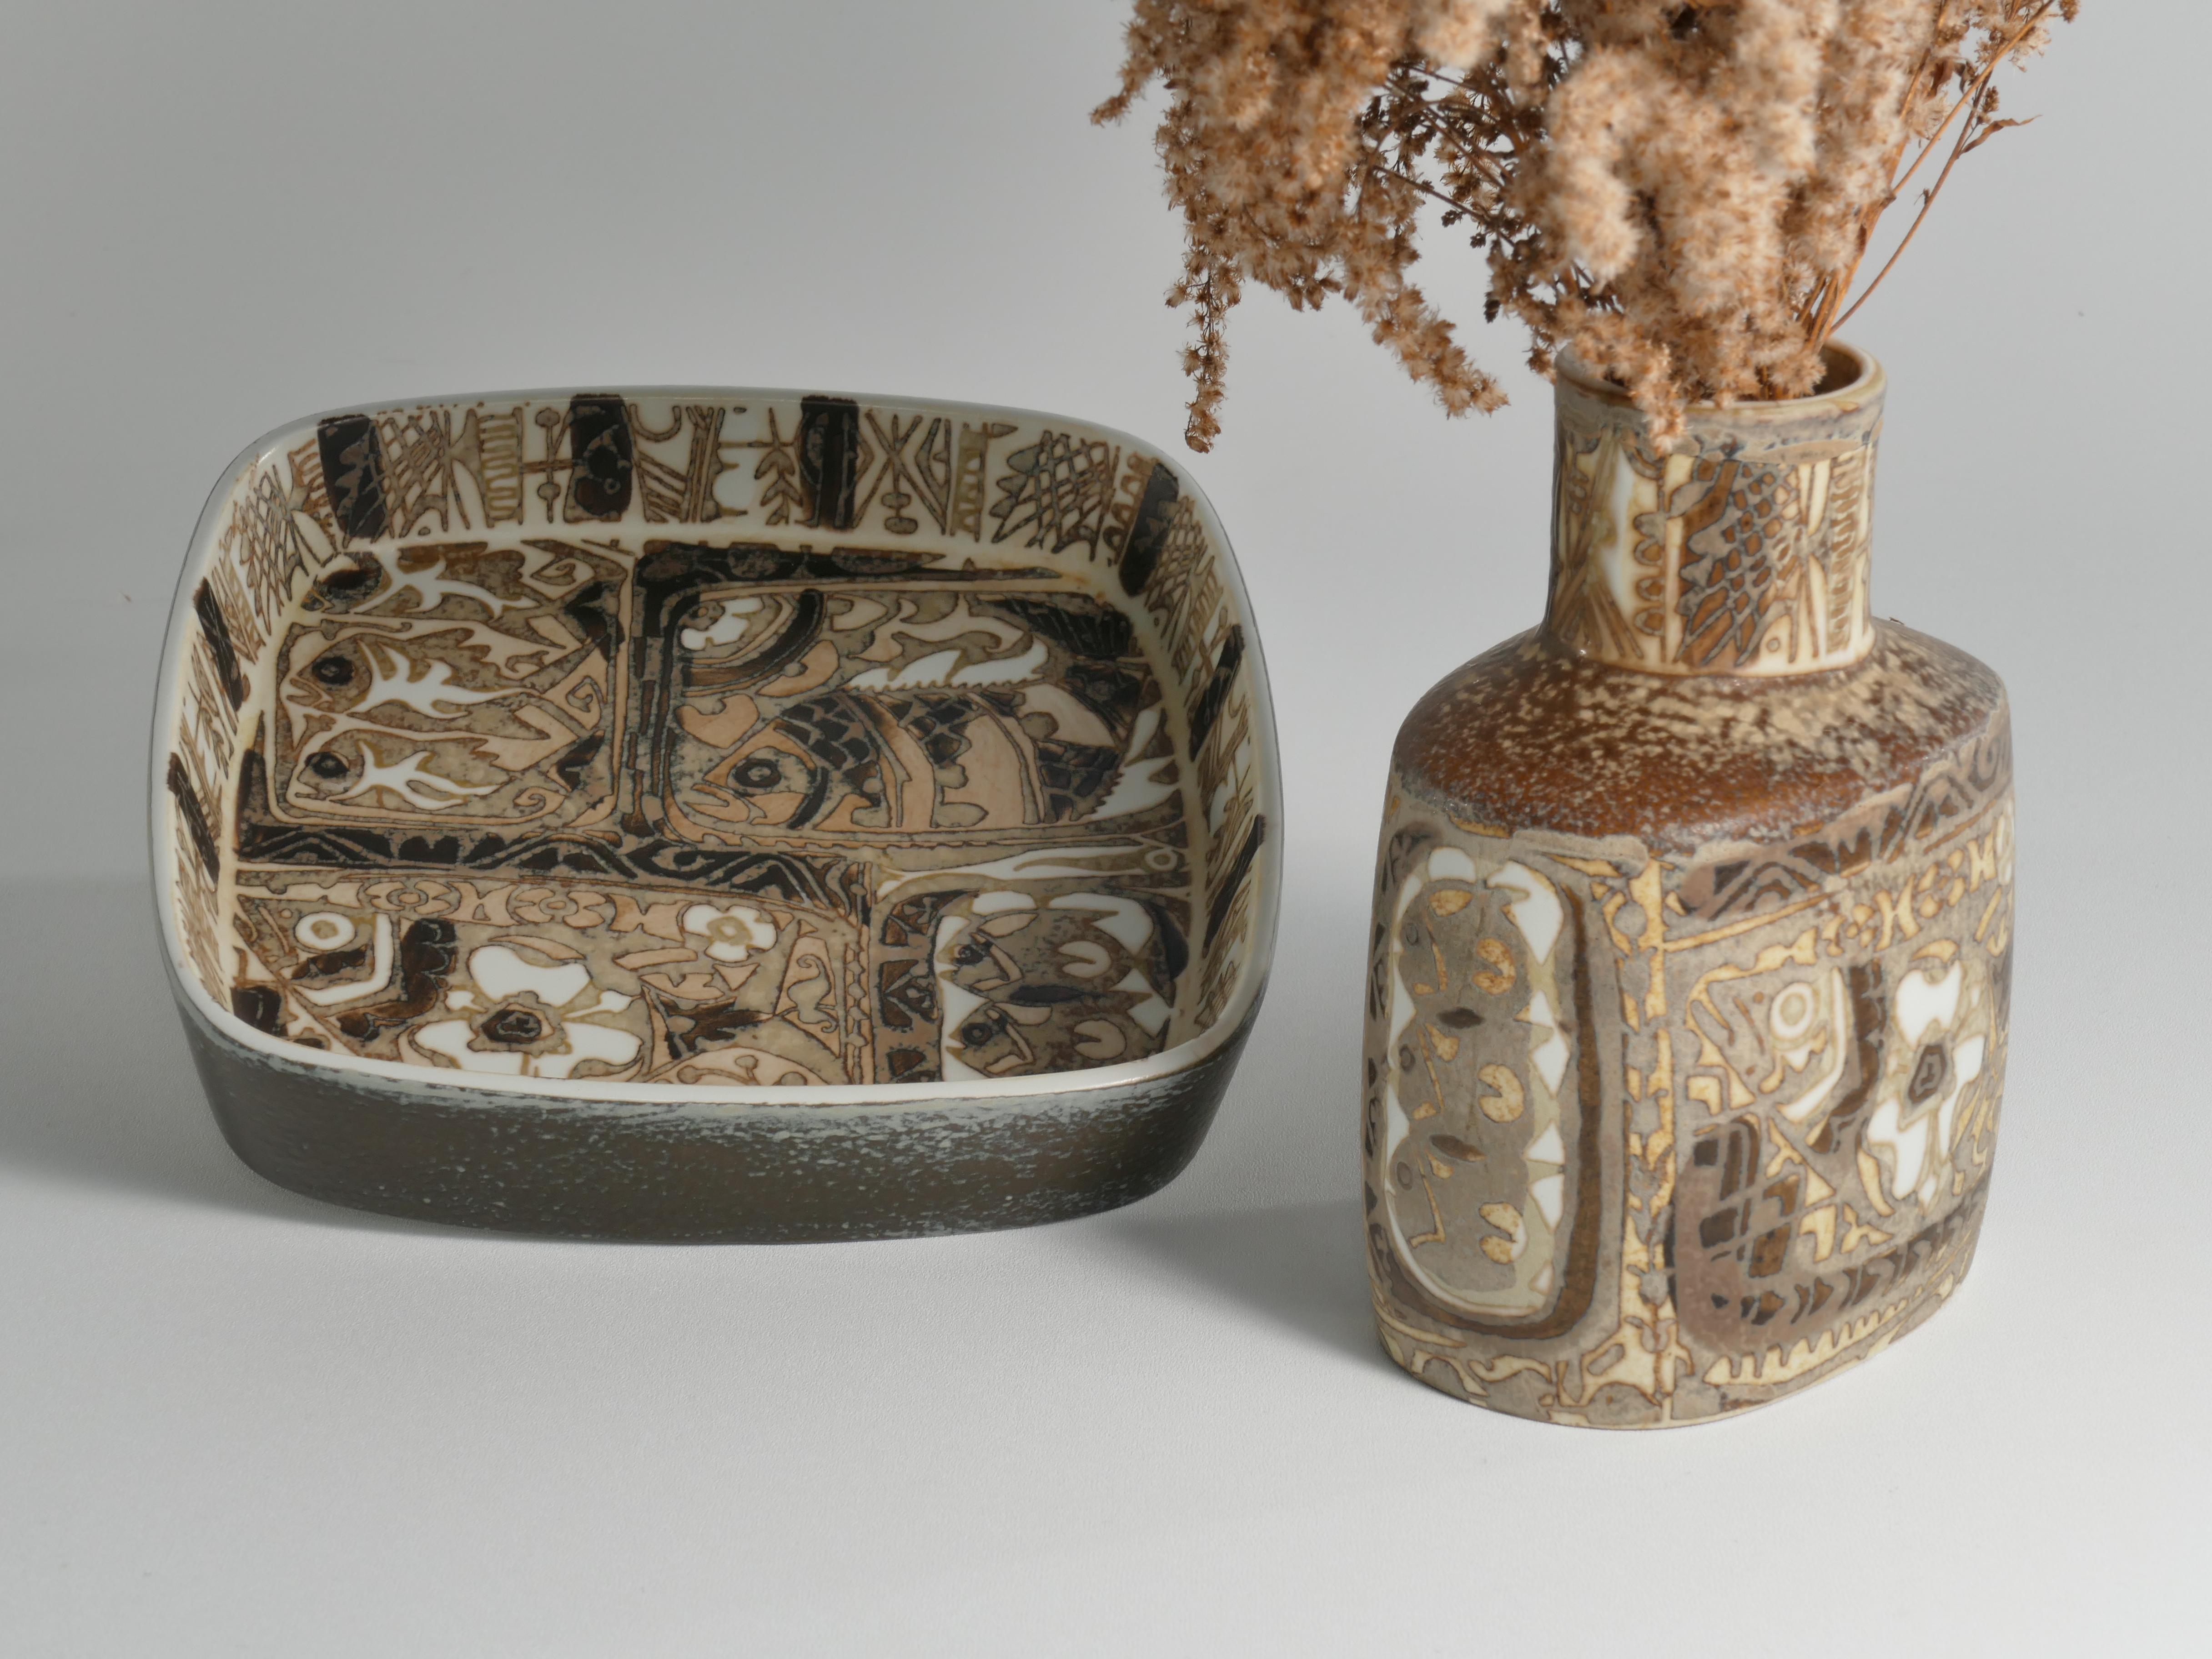 Danois Assiette et vase moderne scandinave, céramique, 